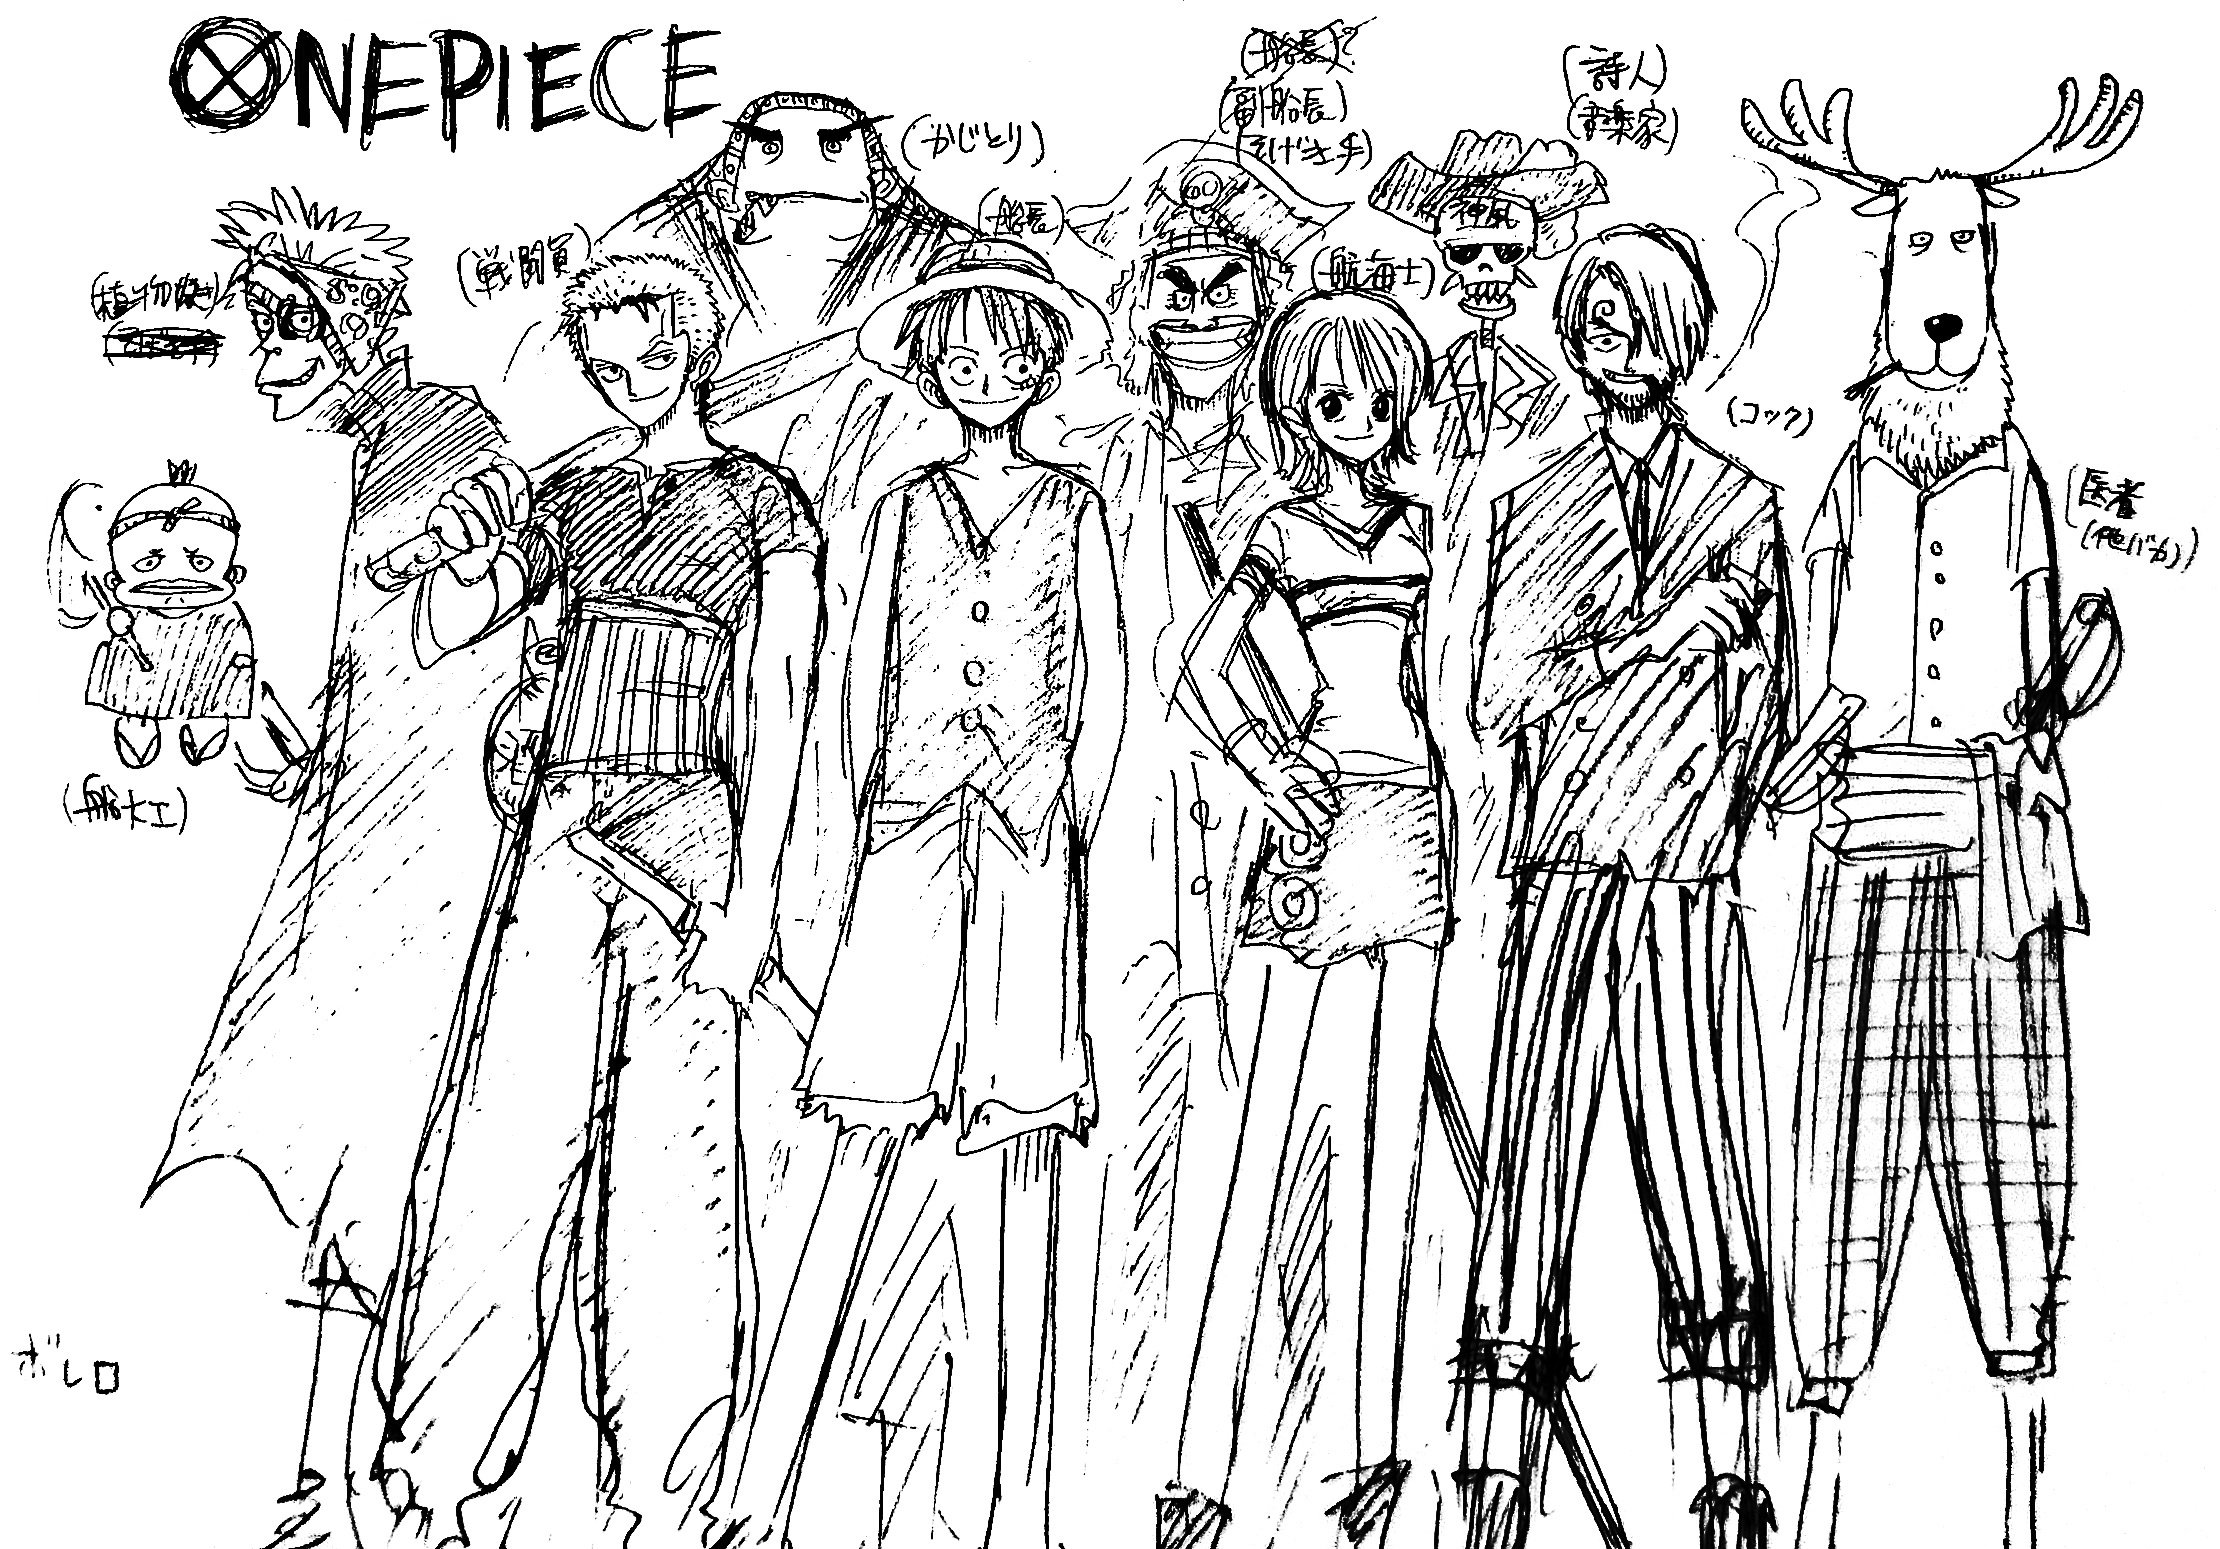 One Piece Sketch Shares Katakuri's Original Design